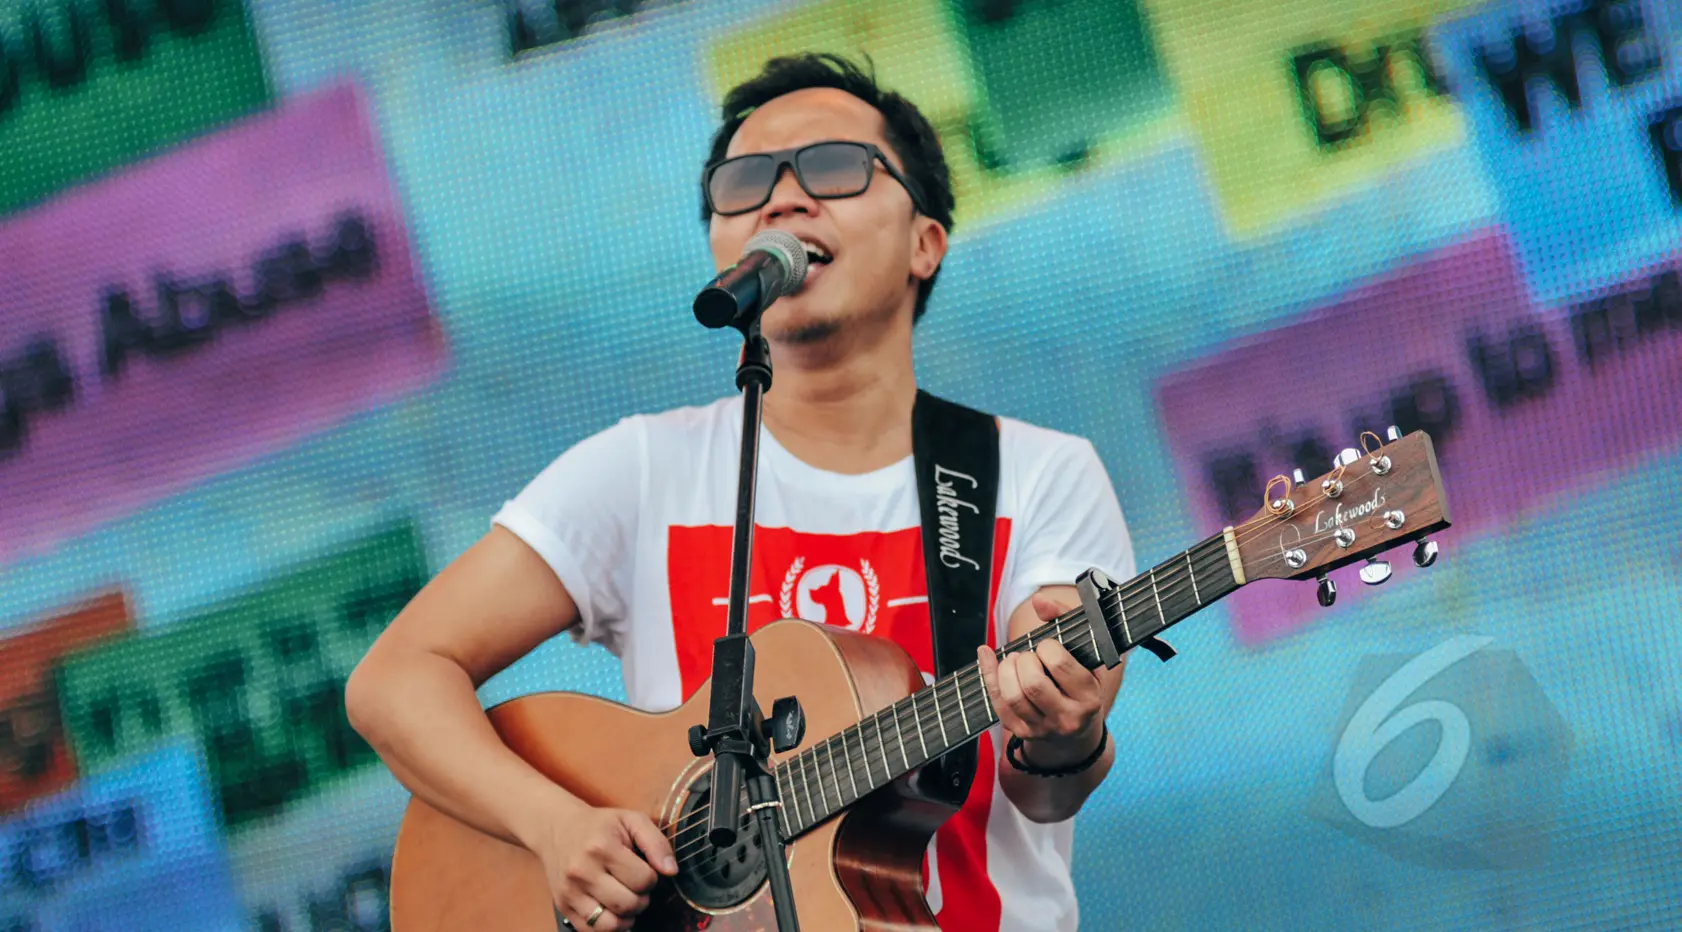 Dengan suara serak andalannya, Sandhy Sondoro sukses meramaikan Konser Drug Free Asia Afrika di Kawasan Monas, Jakarta, Minggu (19/4). Konser dalam rangkaian KAA itu sebagai kampanye pencegahan penyalahgunaan narkotik. (/Faizal Fanani)